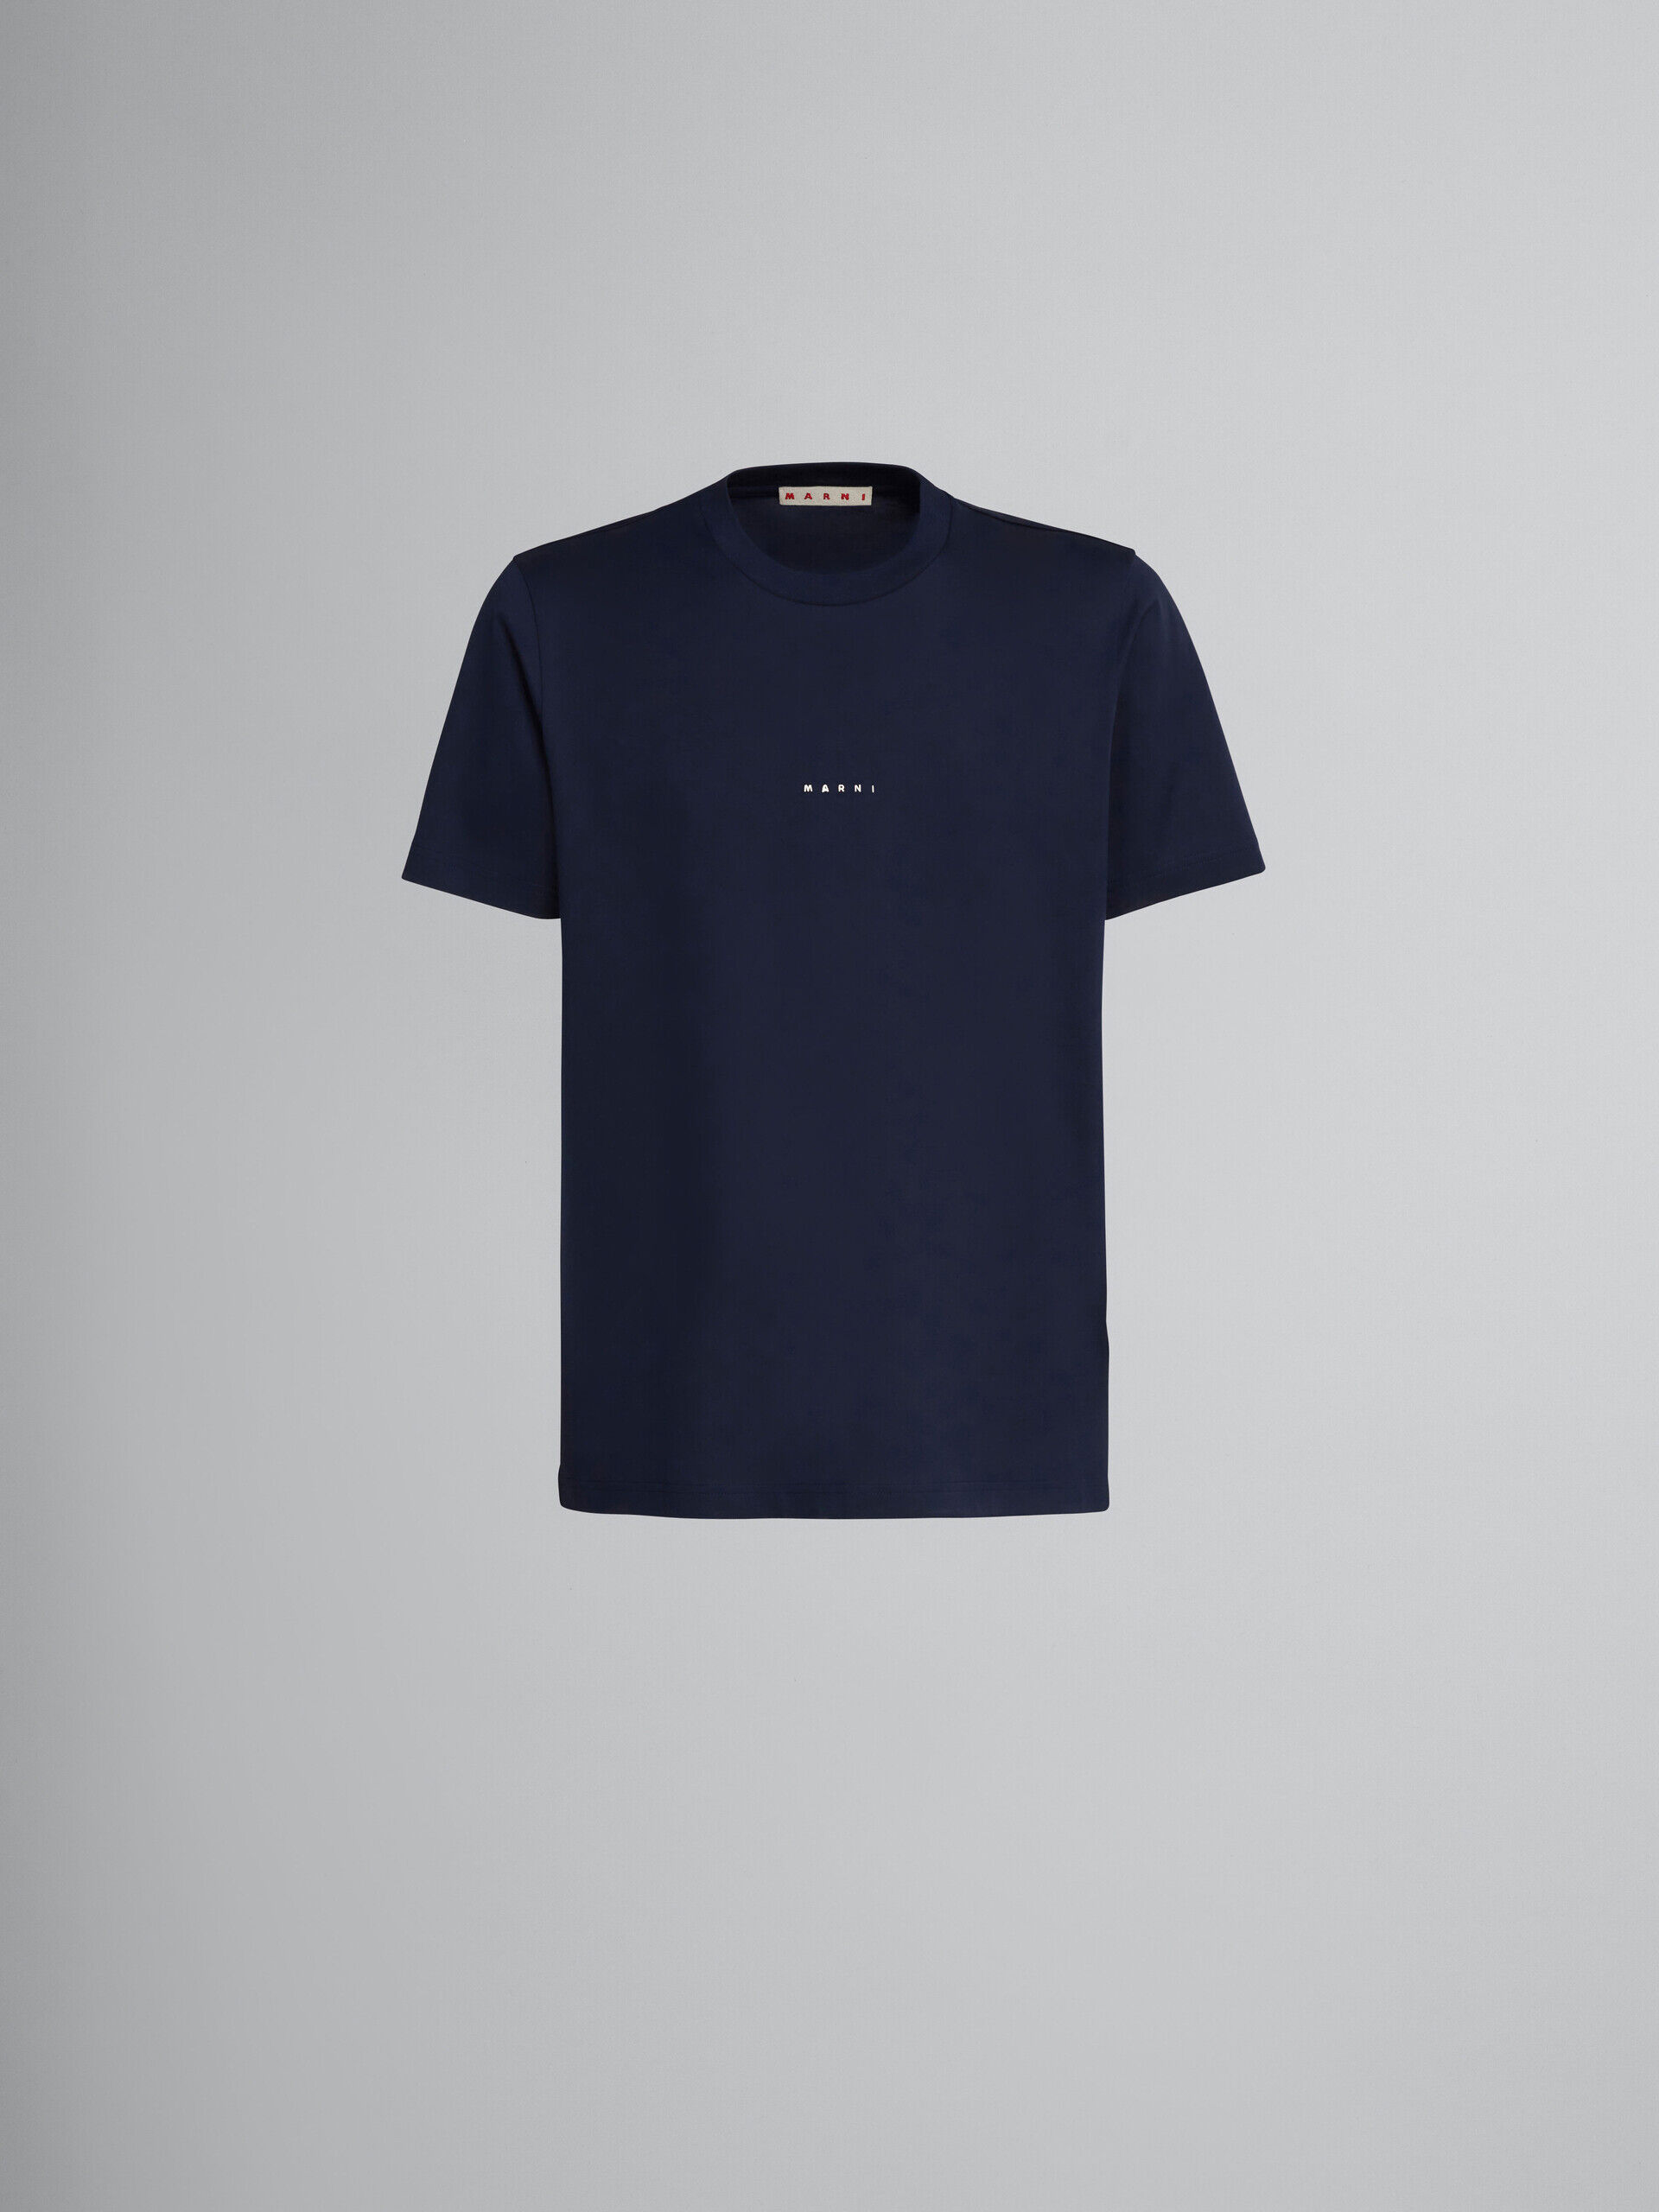 ダークブルー ロゴ入り オーガニックコットン製Tシャツ | Marni